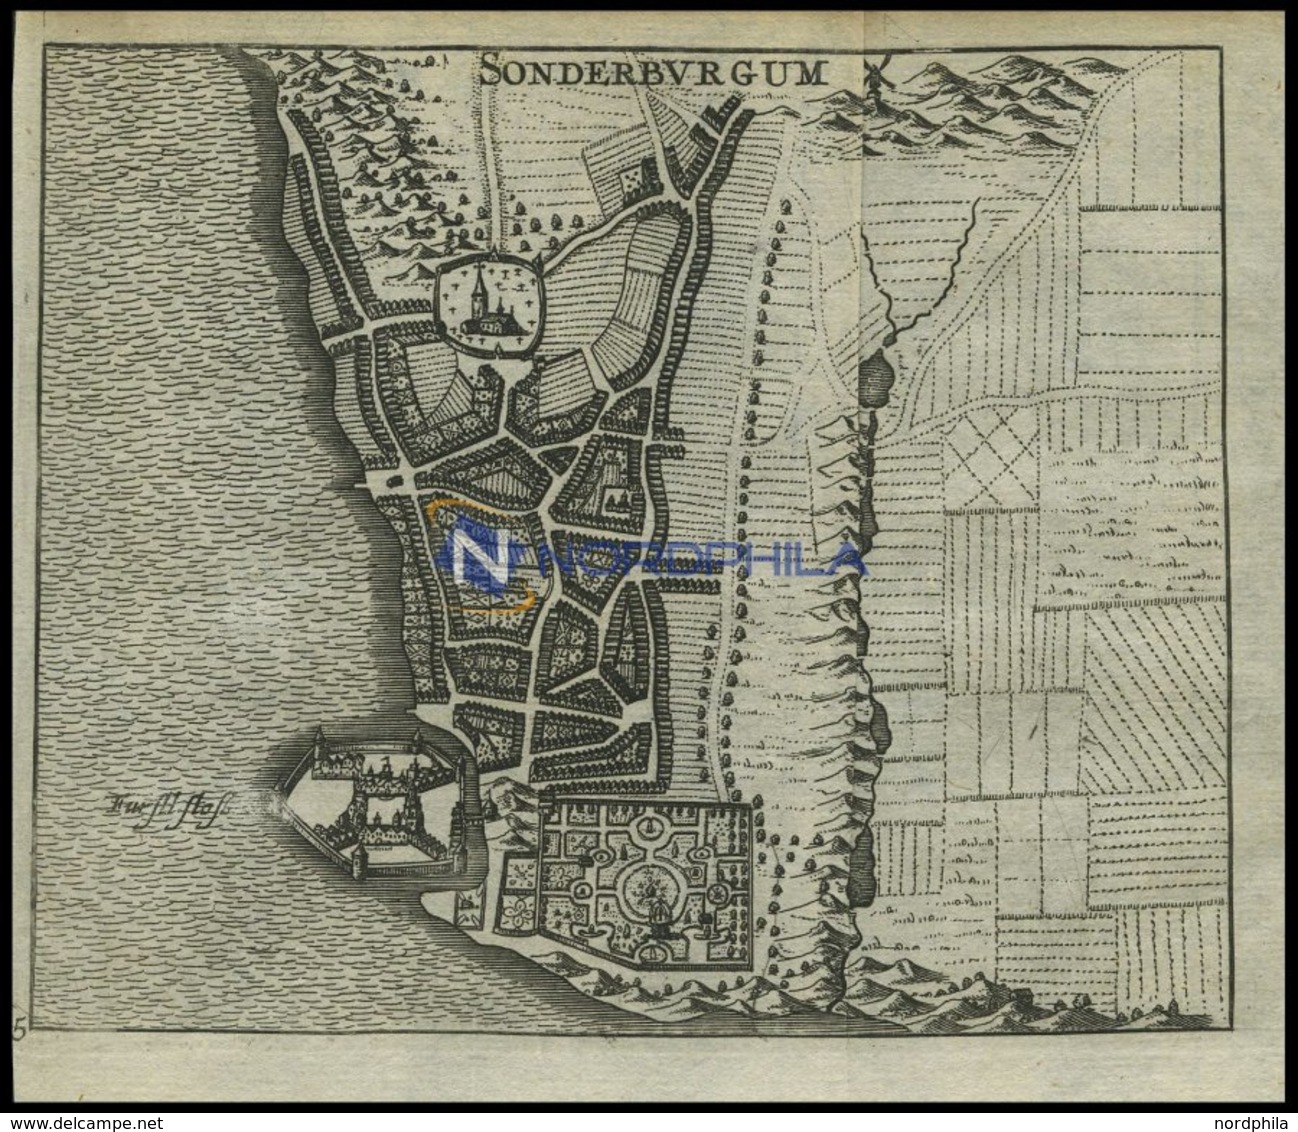 SONDERBURG, Stadtplan Mit Dem Fürstlichen Schloß, Kupferstich Von Zeiller 1655 - Lithographies